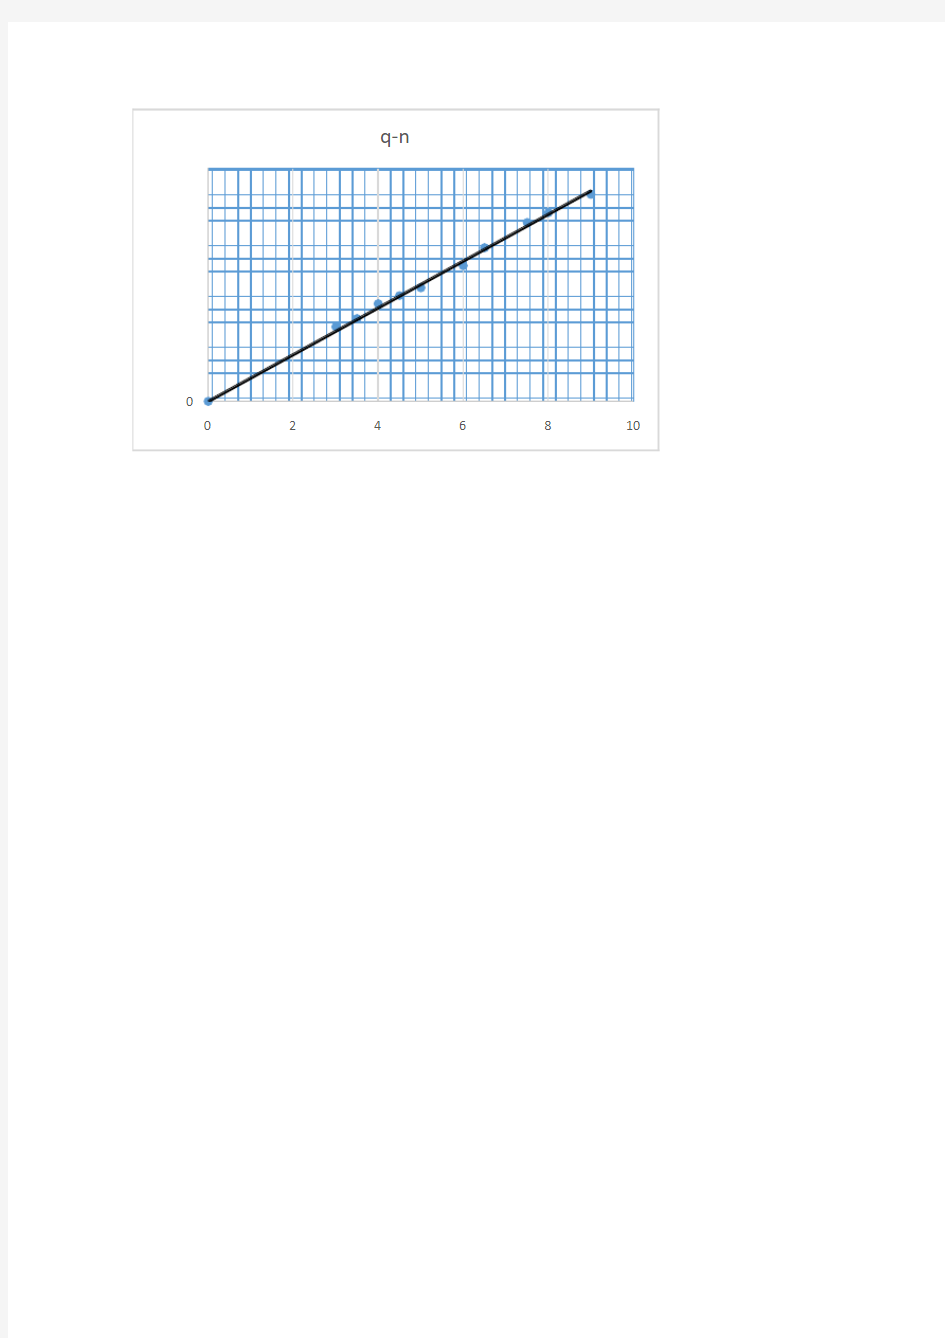 伏安特性曲线图1